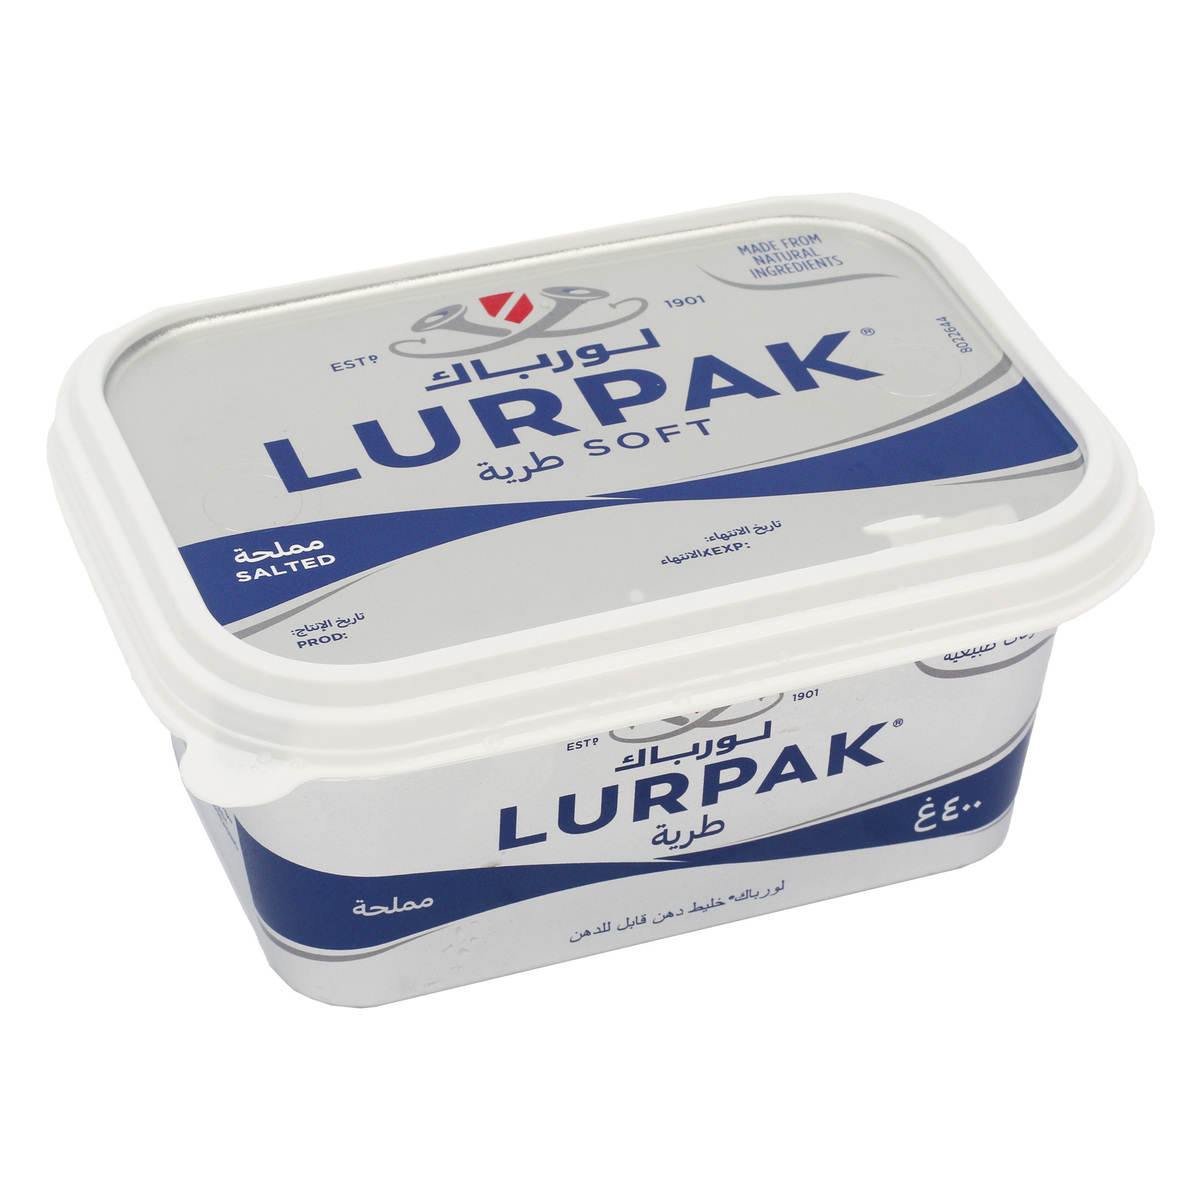 Lurpak Soft Salted Butter Tub 2 x 400 g